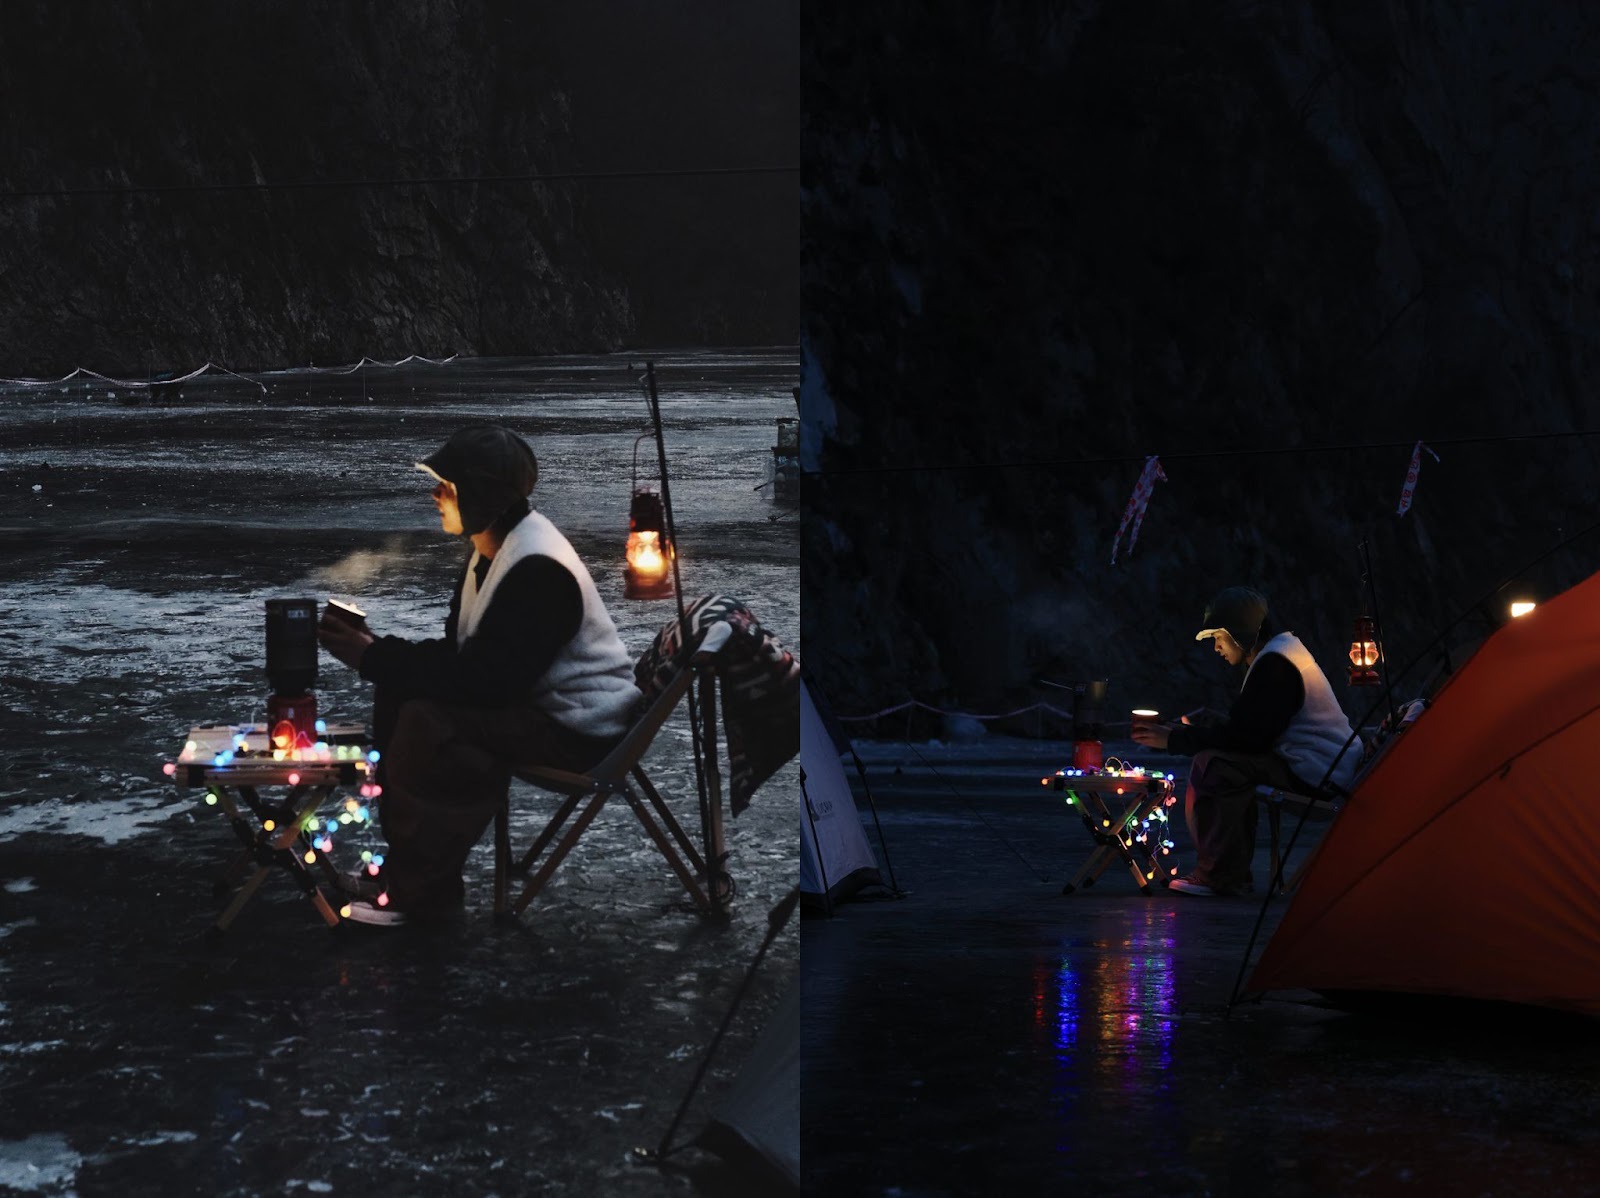 Chàng trai Việt vượt 300 km đi cắm trại trên sông băng tuyệt đẹp ở Hàn Quốc - Ảnh 7.